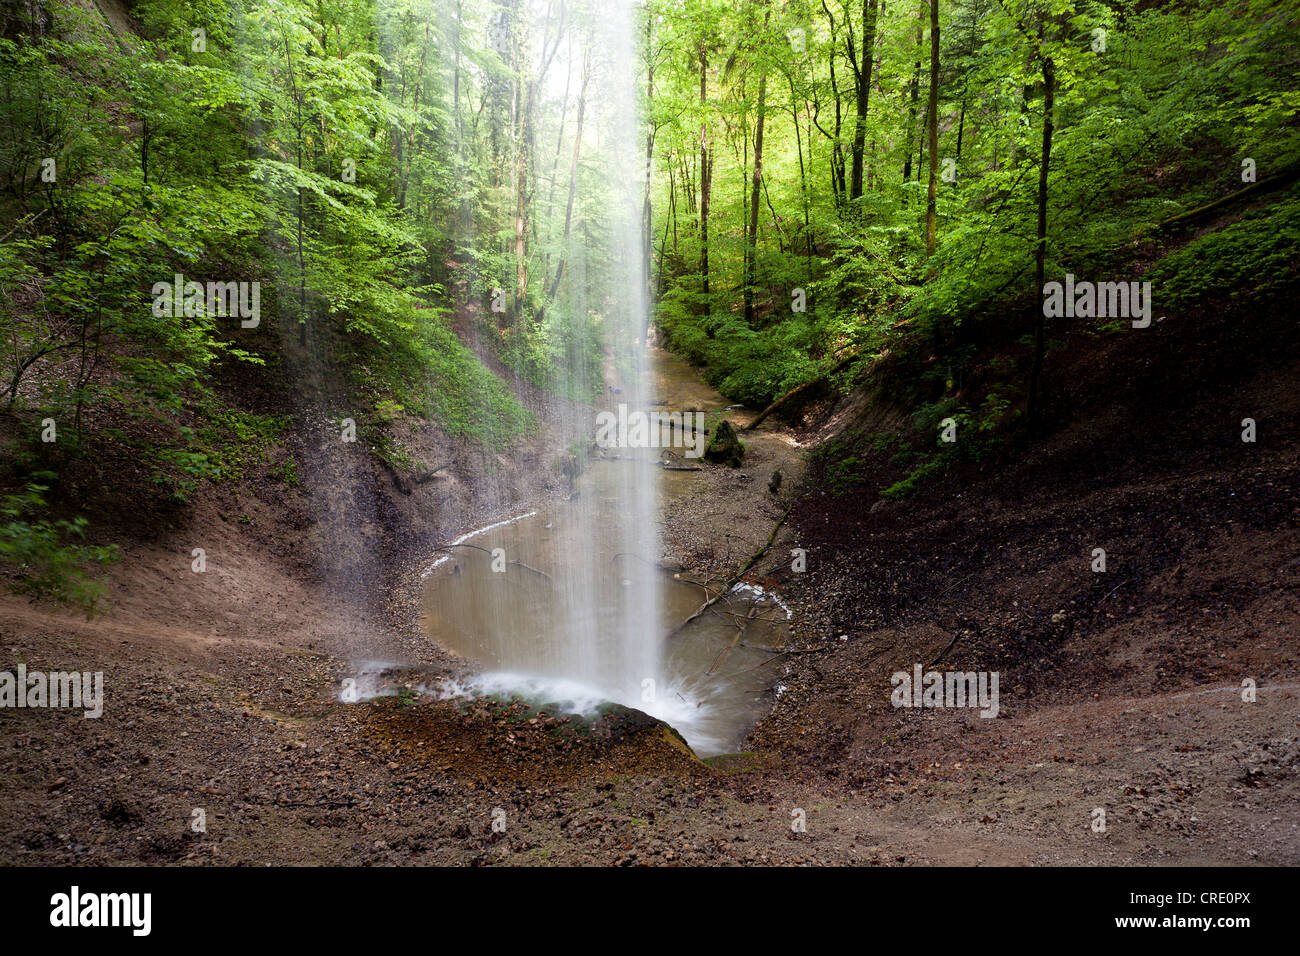 The Giessenwasserfall waterfall at Wil in Switzerland, Europe Stock Photo